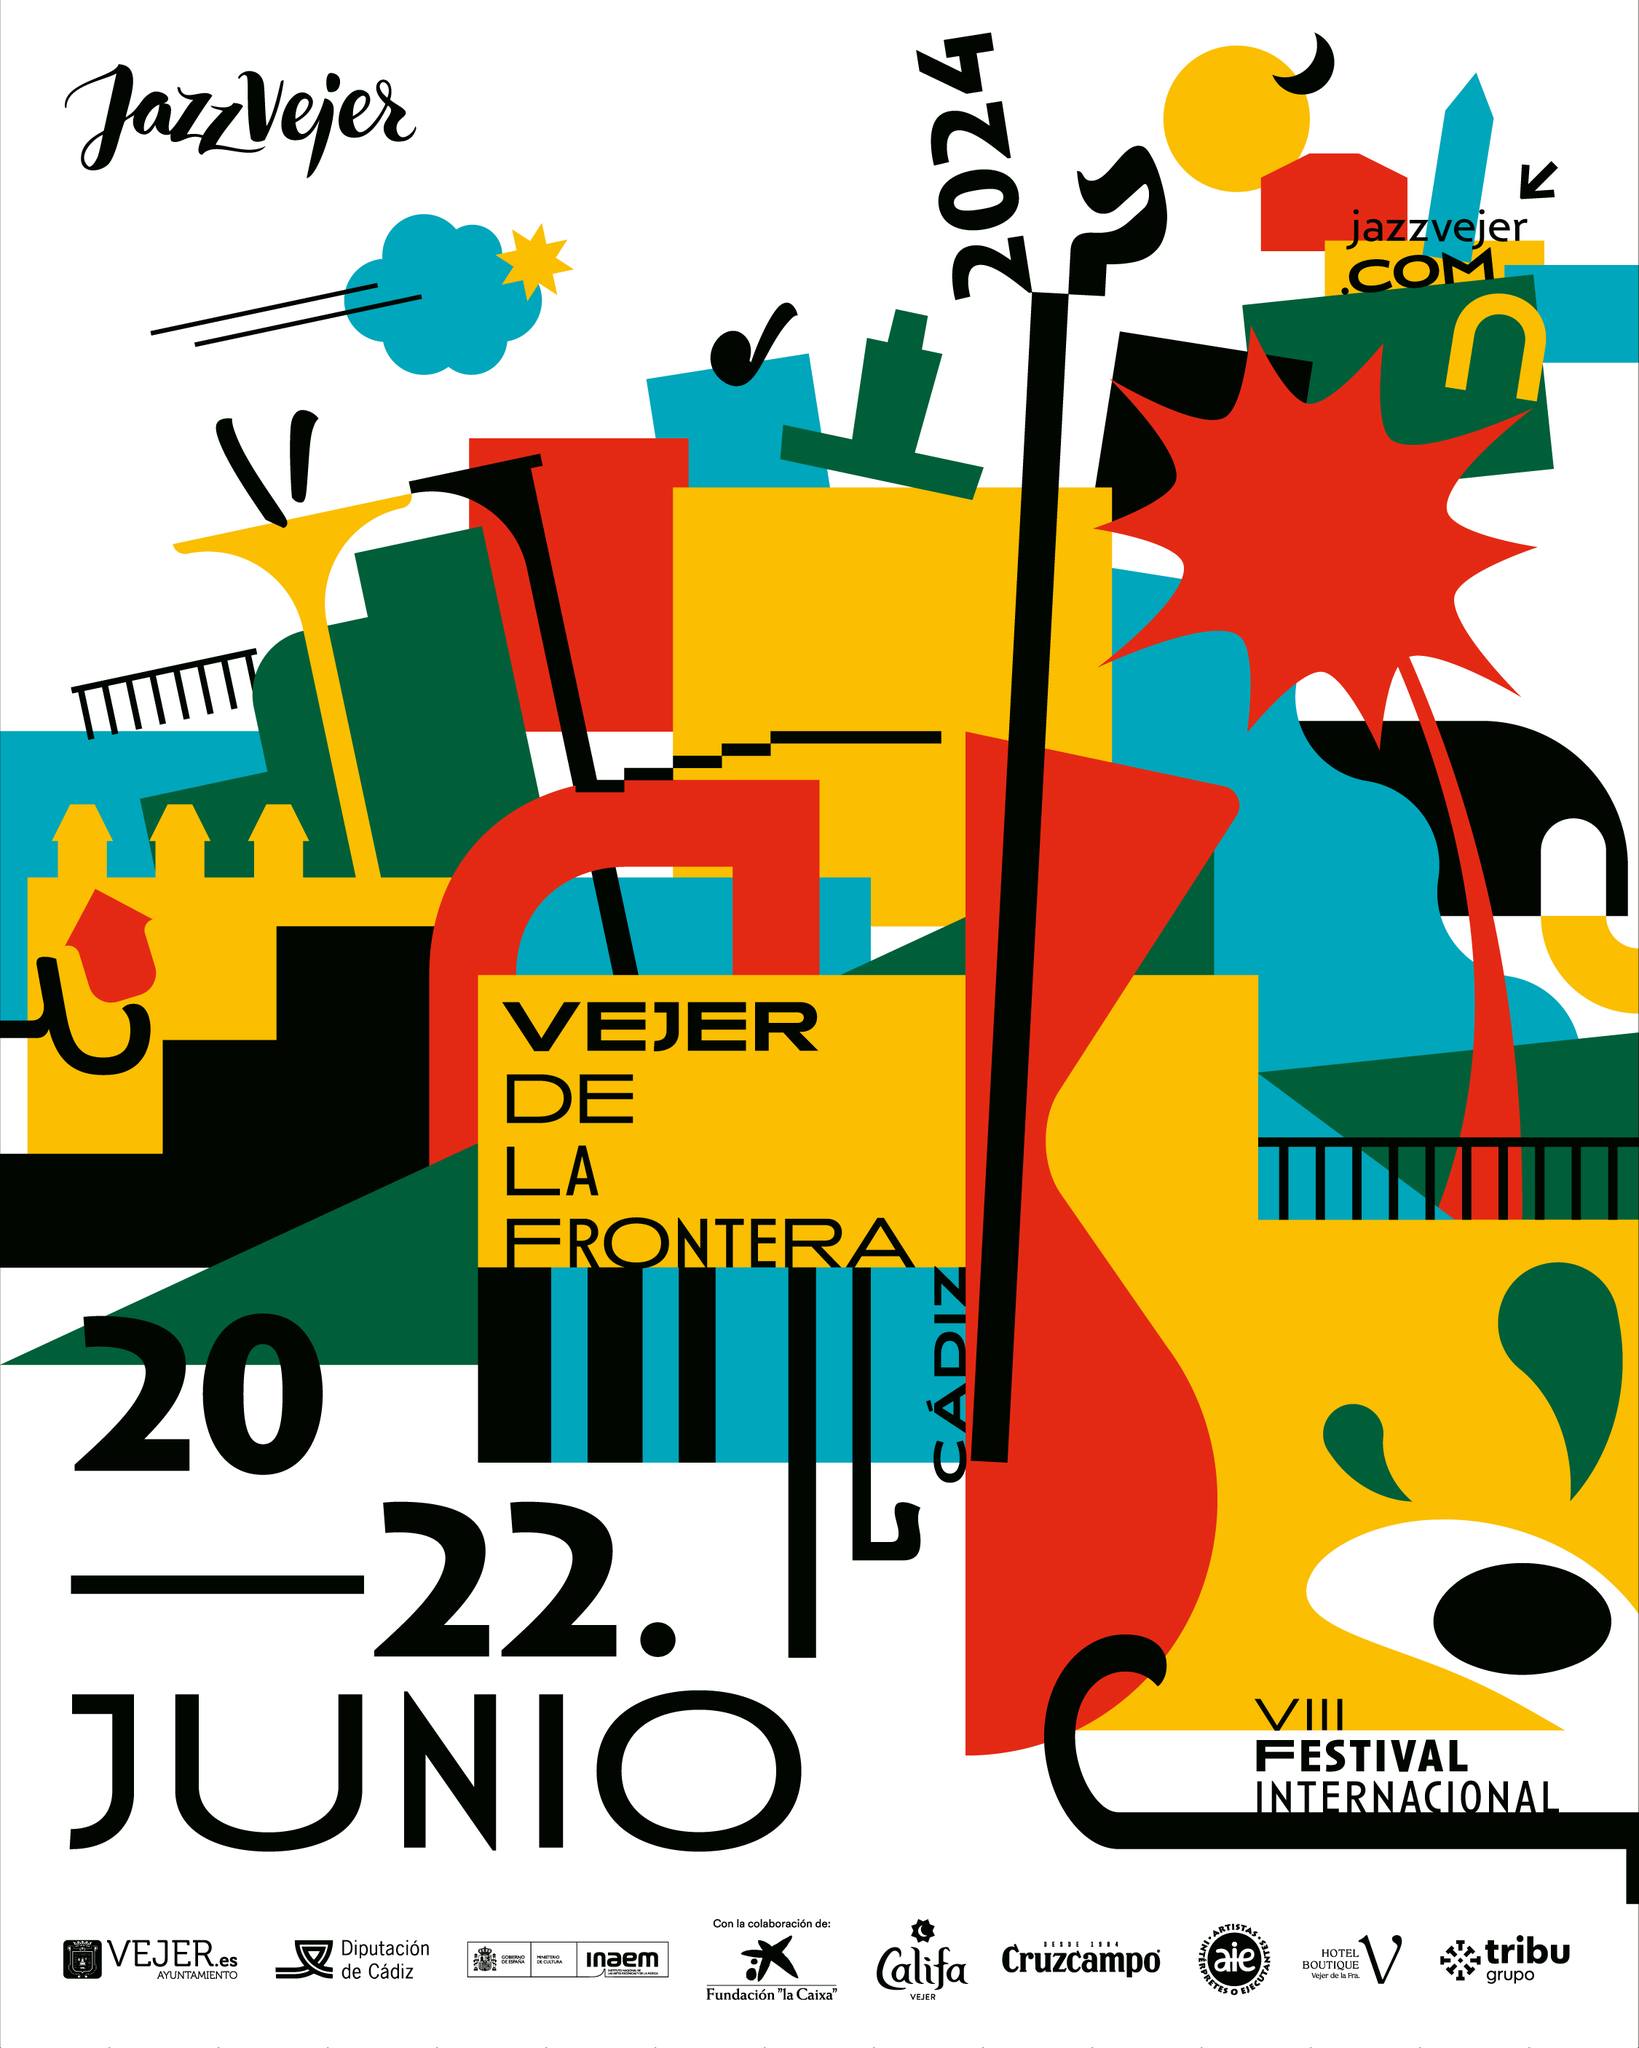 Vejer International Jazz Festival